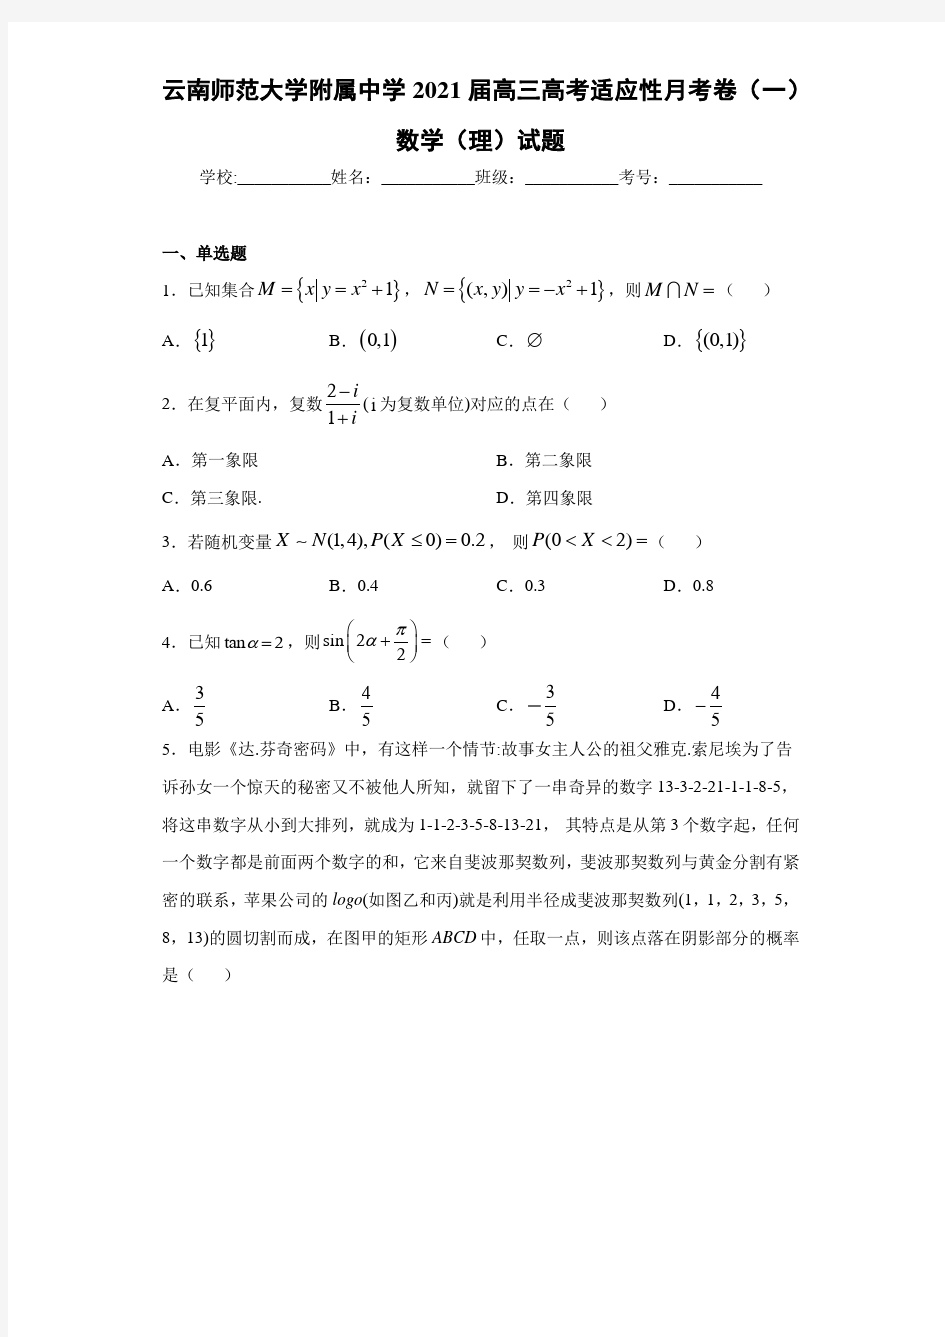 云南师范大学附属中学2021届高三高考适应性月考卷(一)数学(理)试题